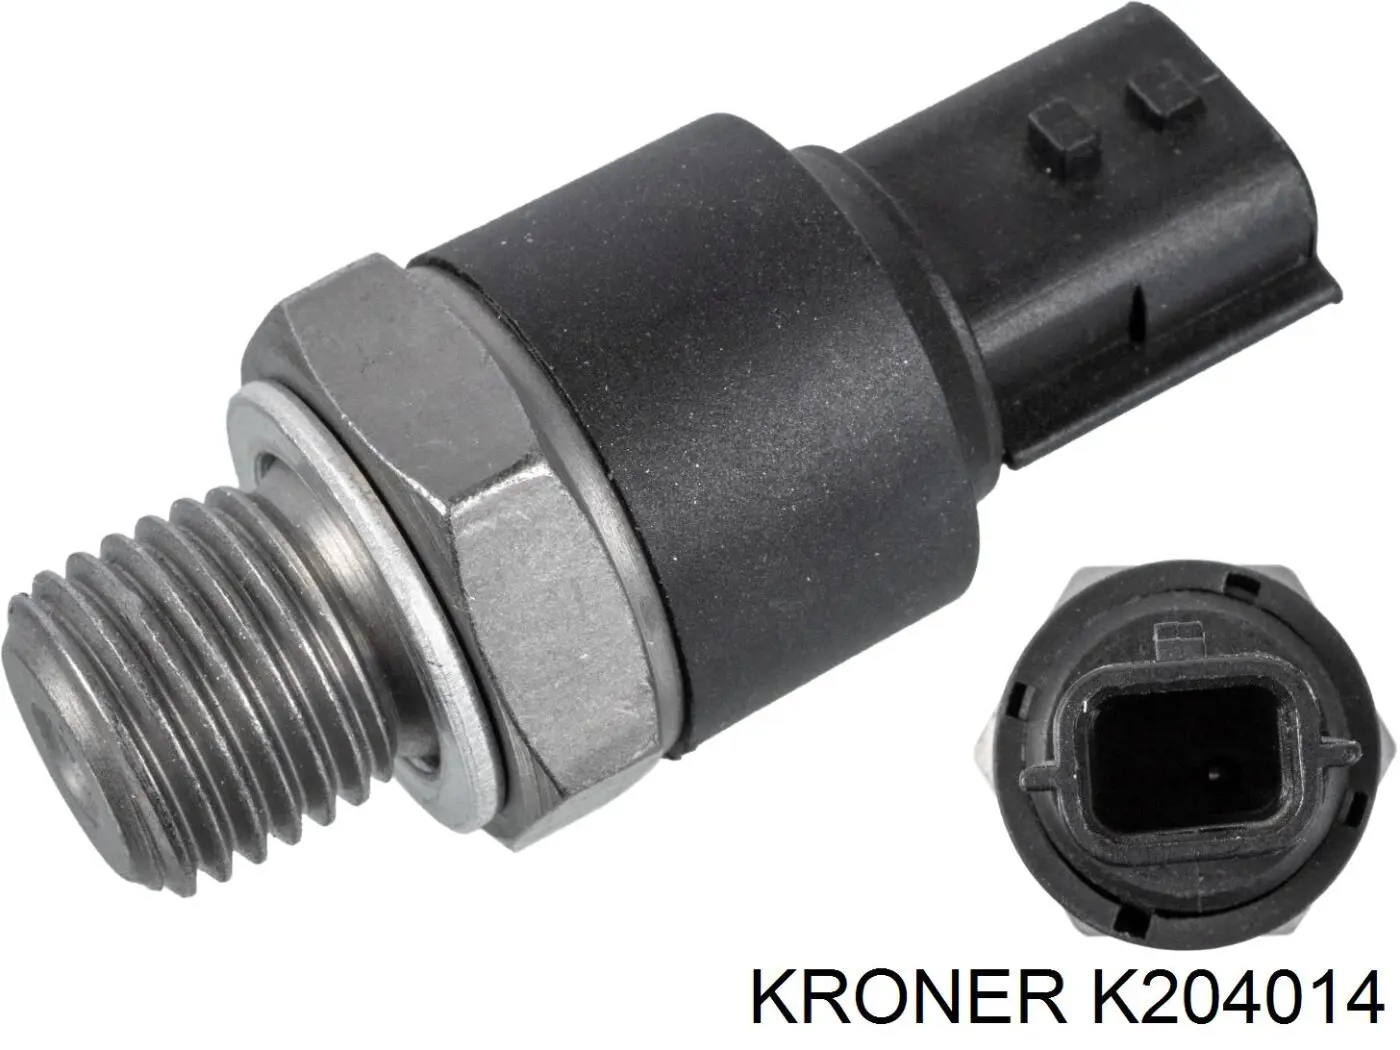 K204014 Kroner датчик давления масла